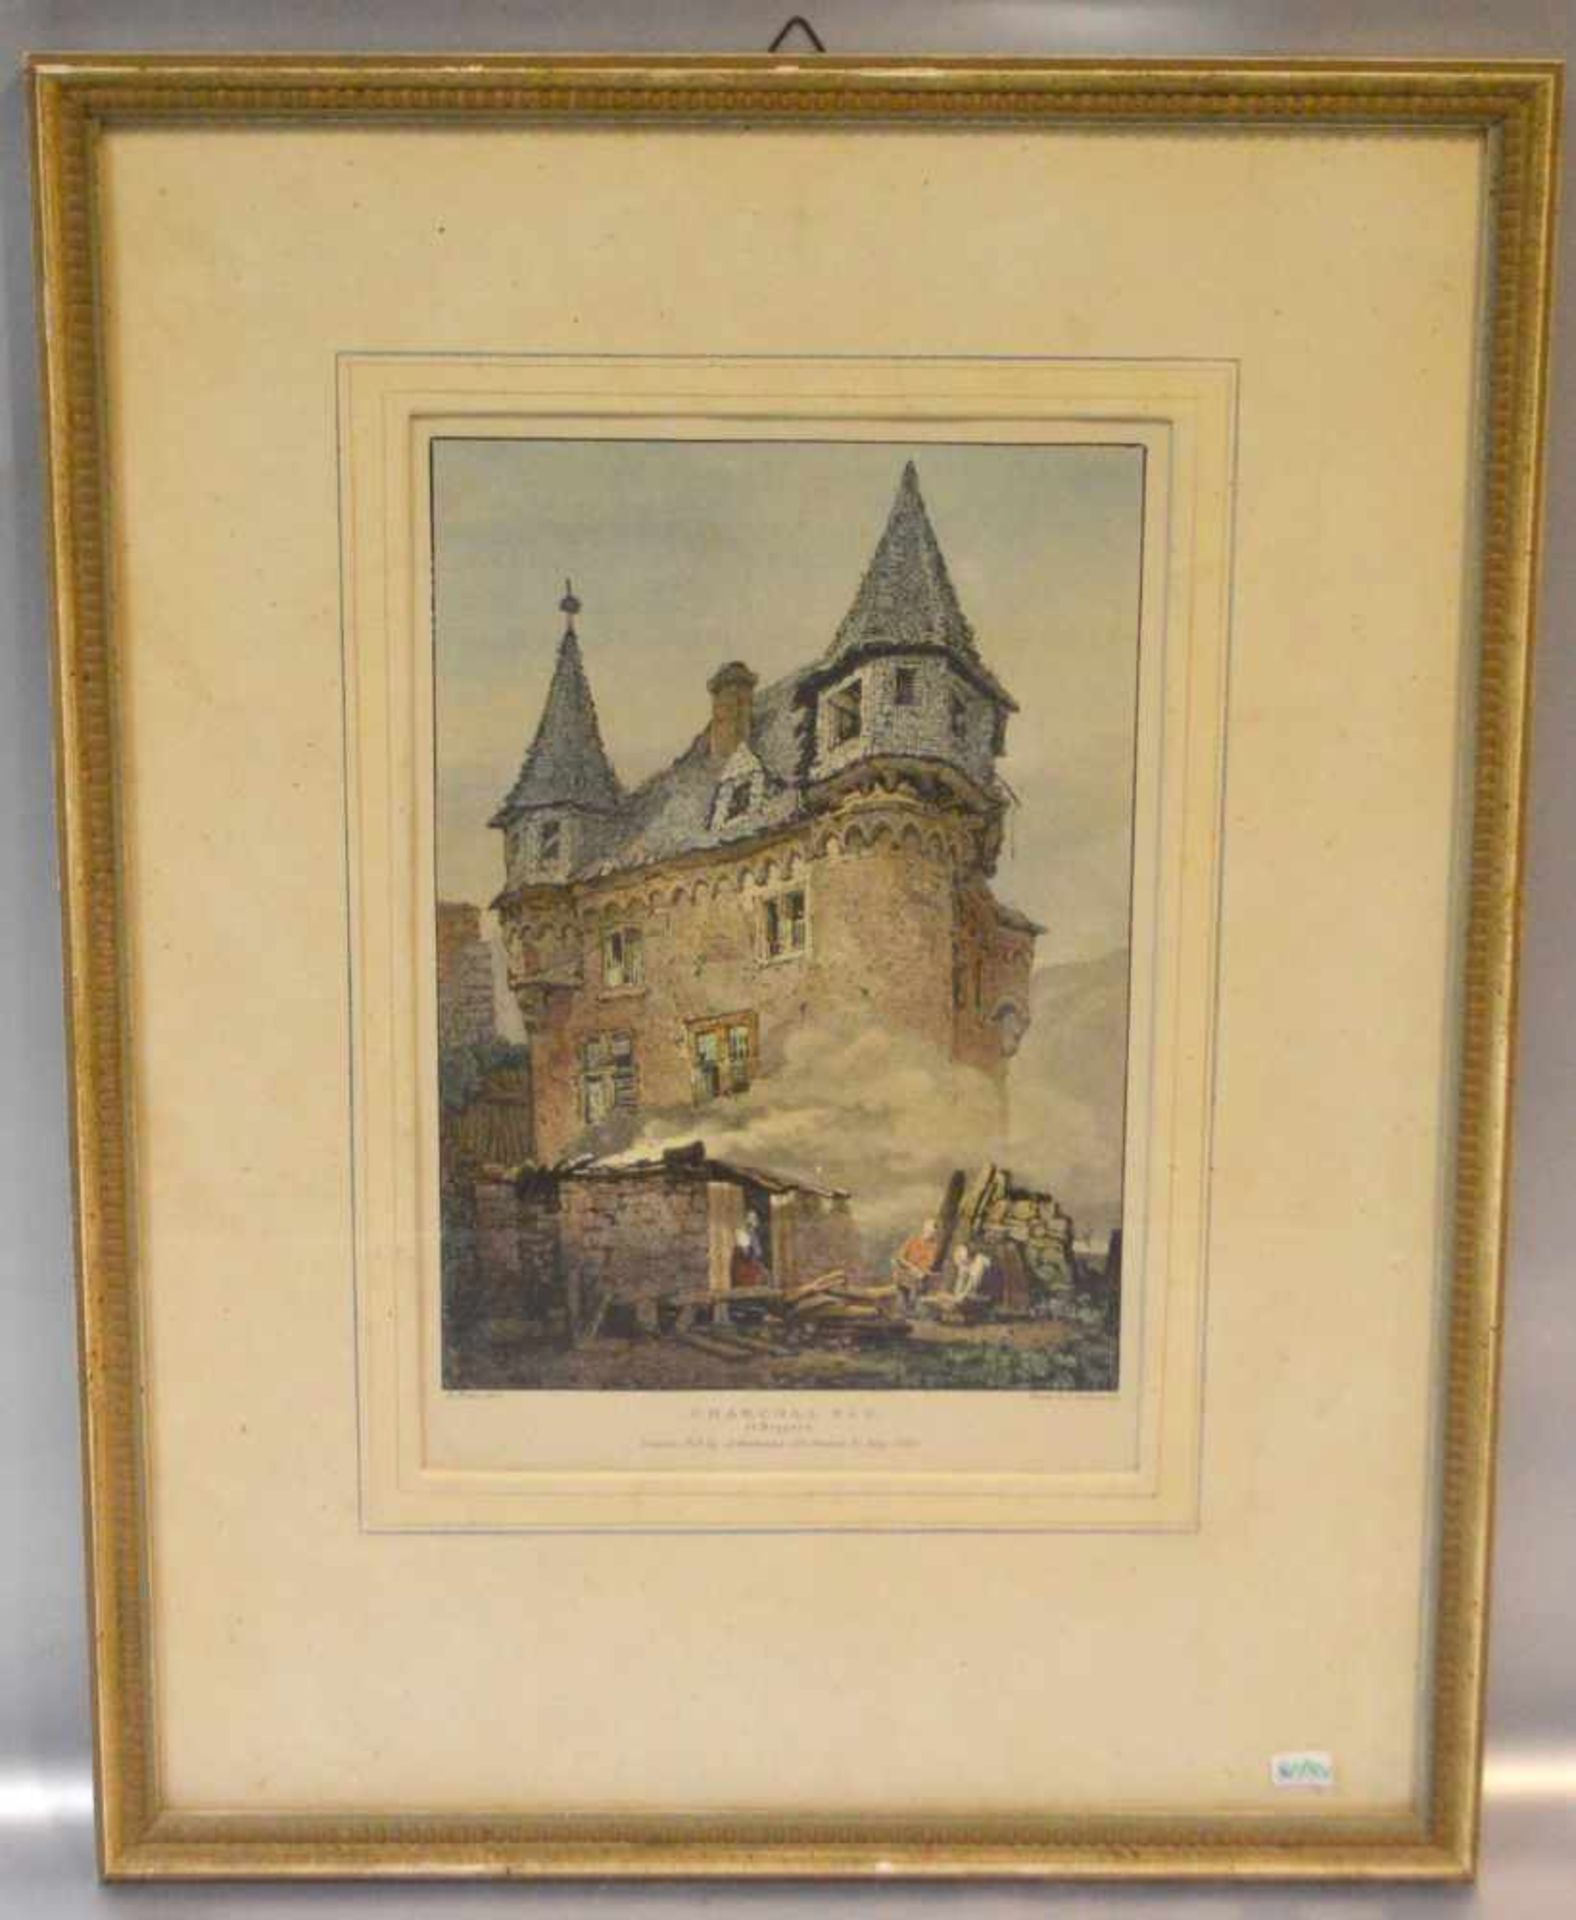 StahlstichAlte Burg bei Boppard, coloriert, im Rahmen, 20 X 30 cm, 19. Jh.